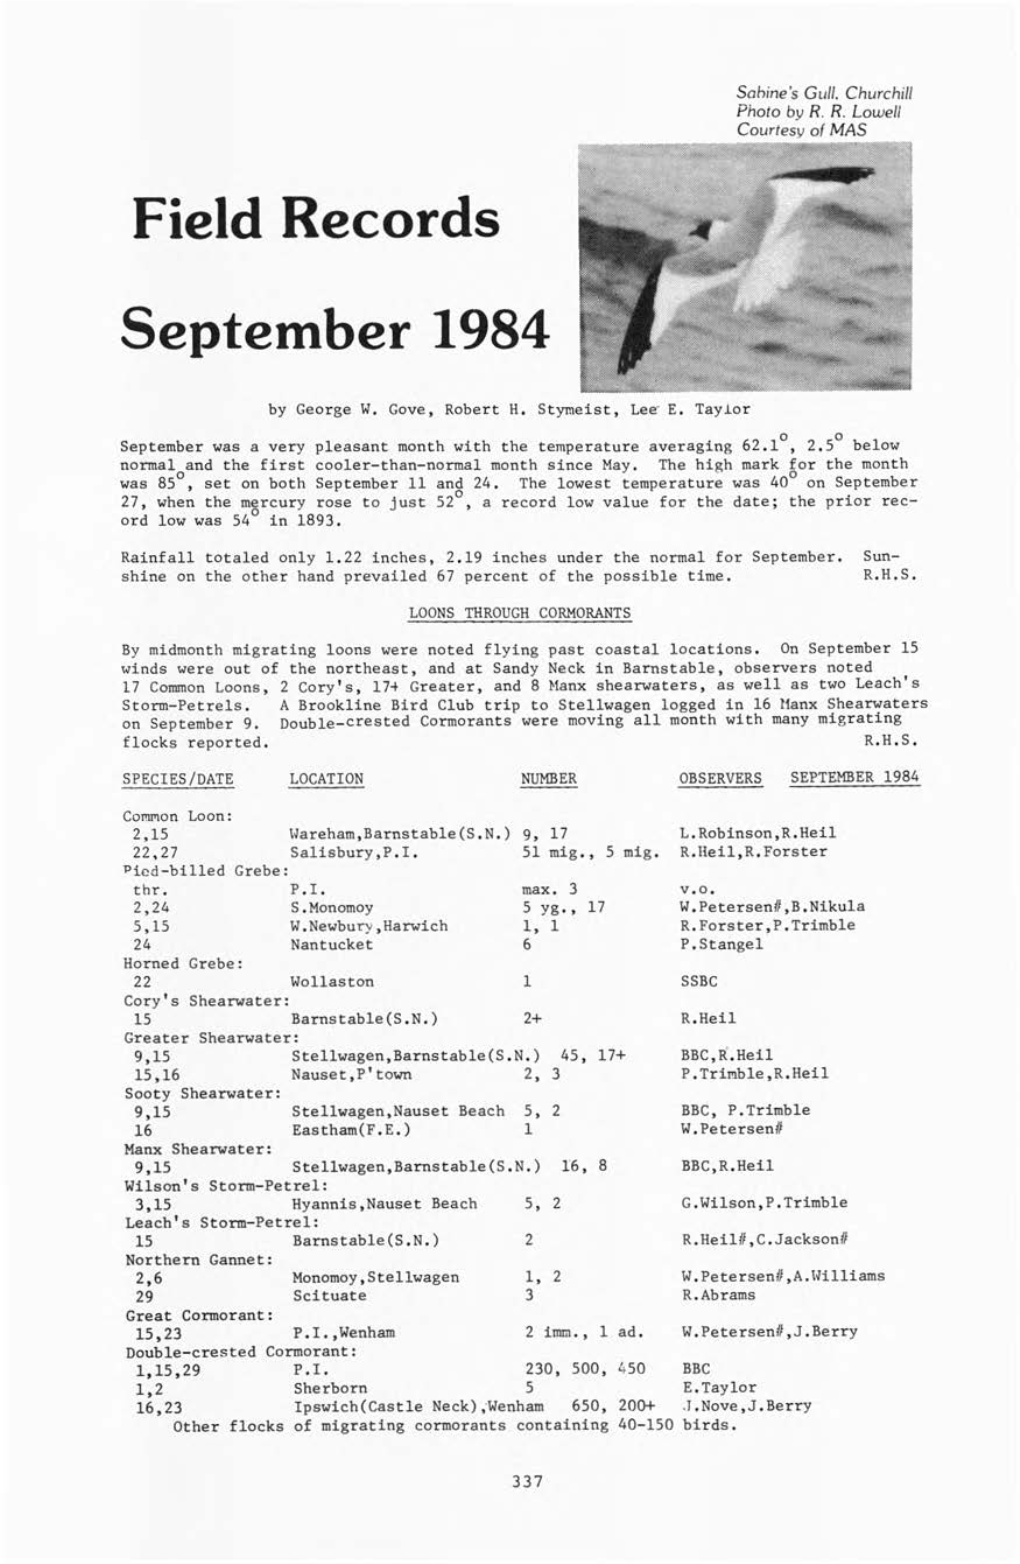 Field Records September 1984